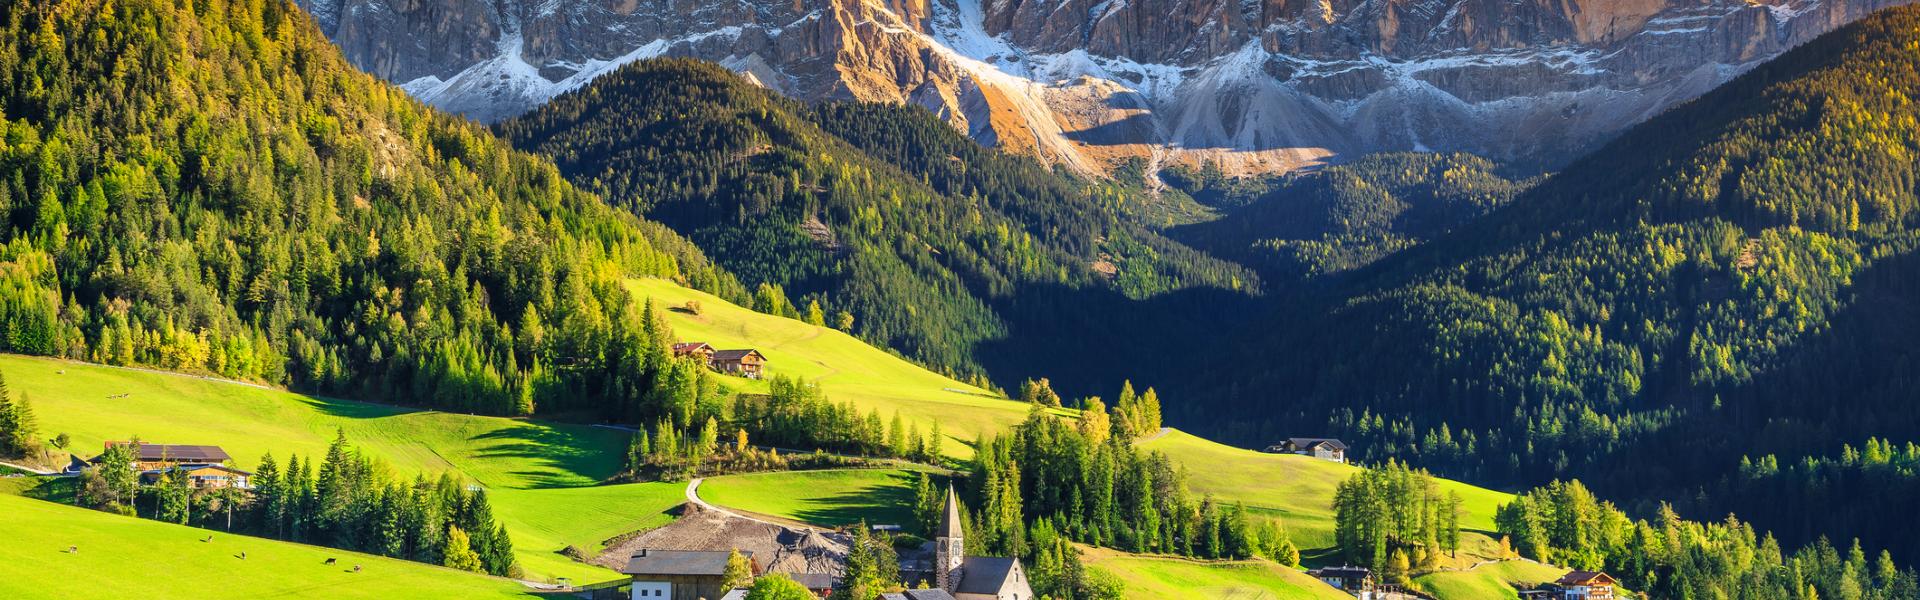 Aluguel de temporada, chalés e pousadas Tirol - LarDeFérias